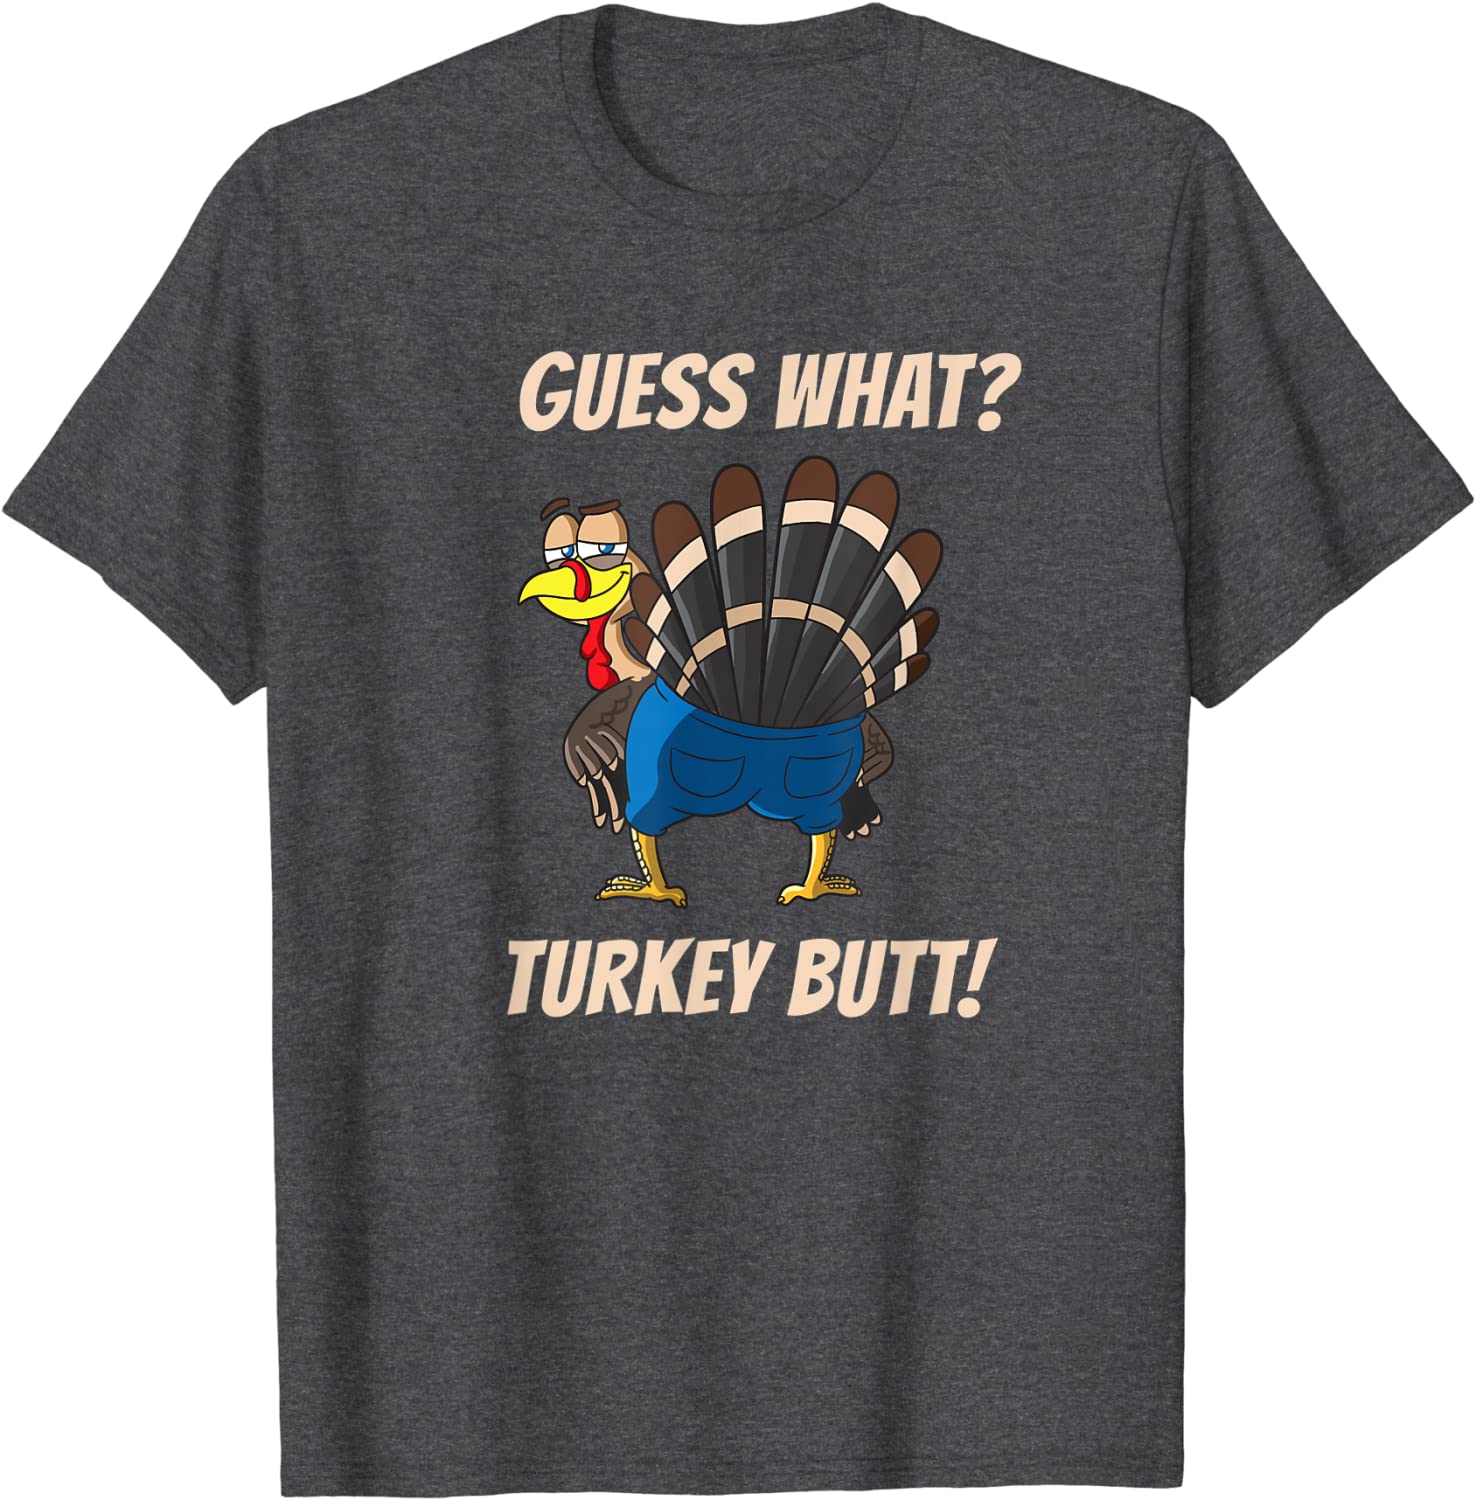 clothes turkey brands